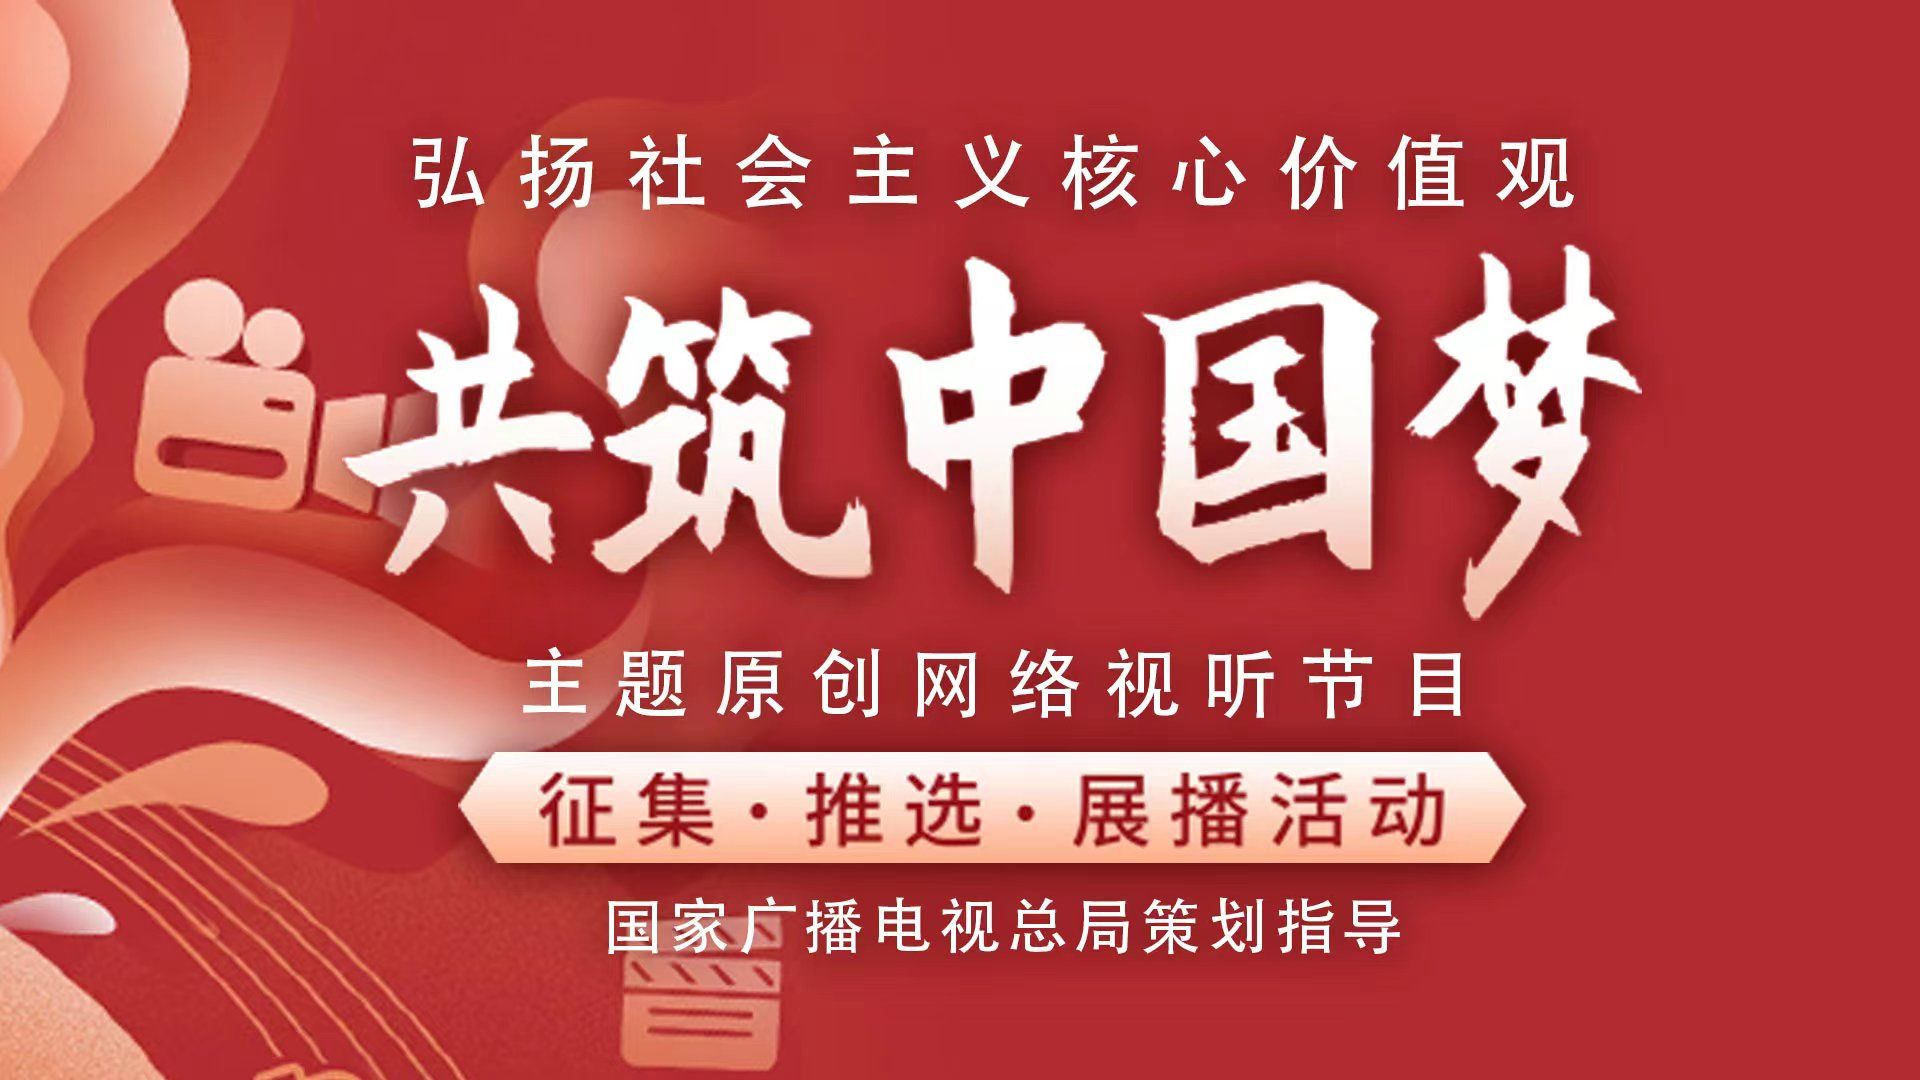 2022年“弘揚社會主義核心價值觀 共筑中國夢”主題優秀網絡視聽節目展播